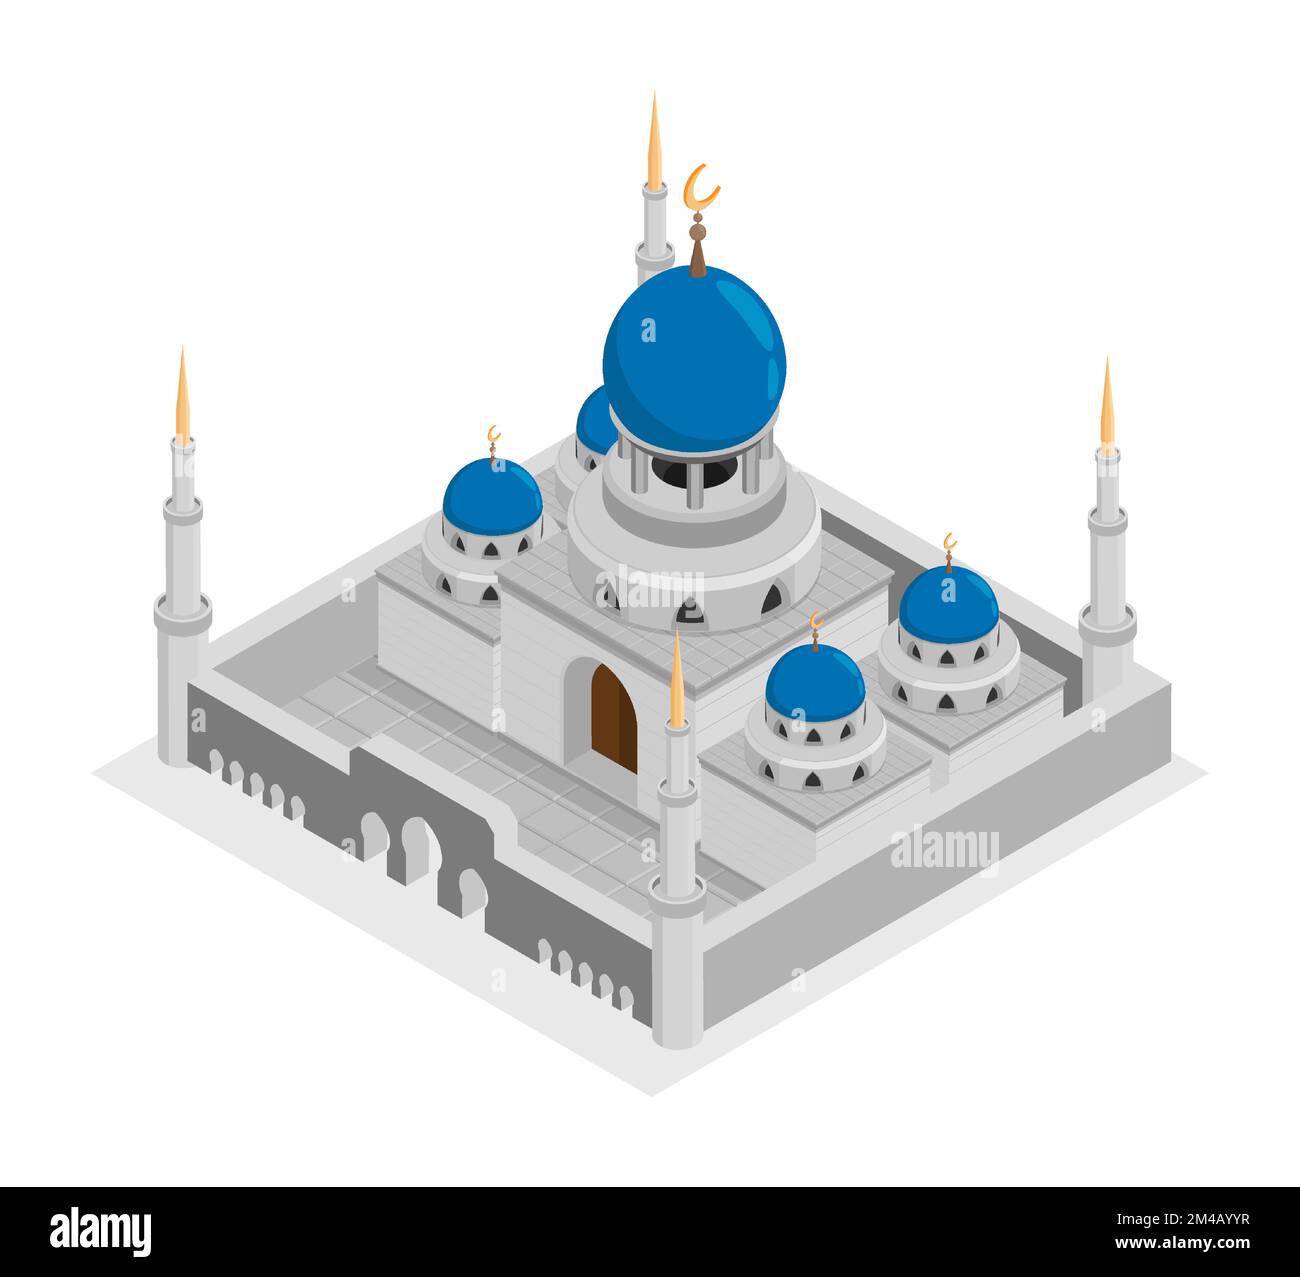 Antiker isometrischer Tempel mit hohen Türmen, muslimische Moschee-Fassade mit Steinwänden, Kuppel und Sichelsymbol oben. Religiöses Gebetsgebäude. Rea Stock Vektor